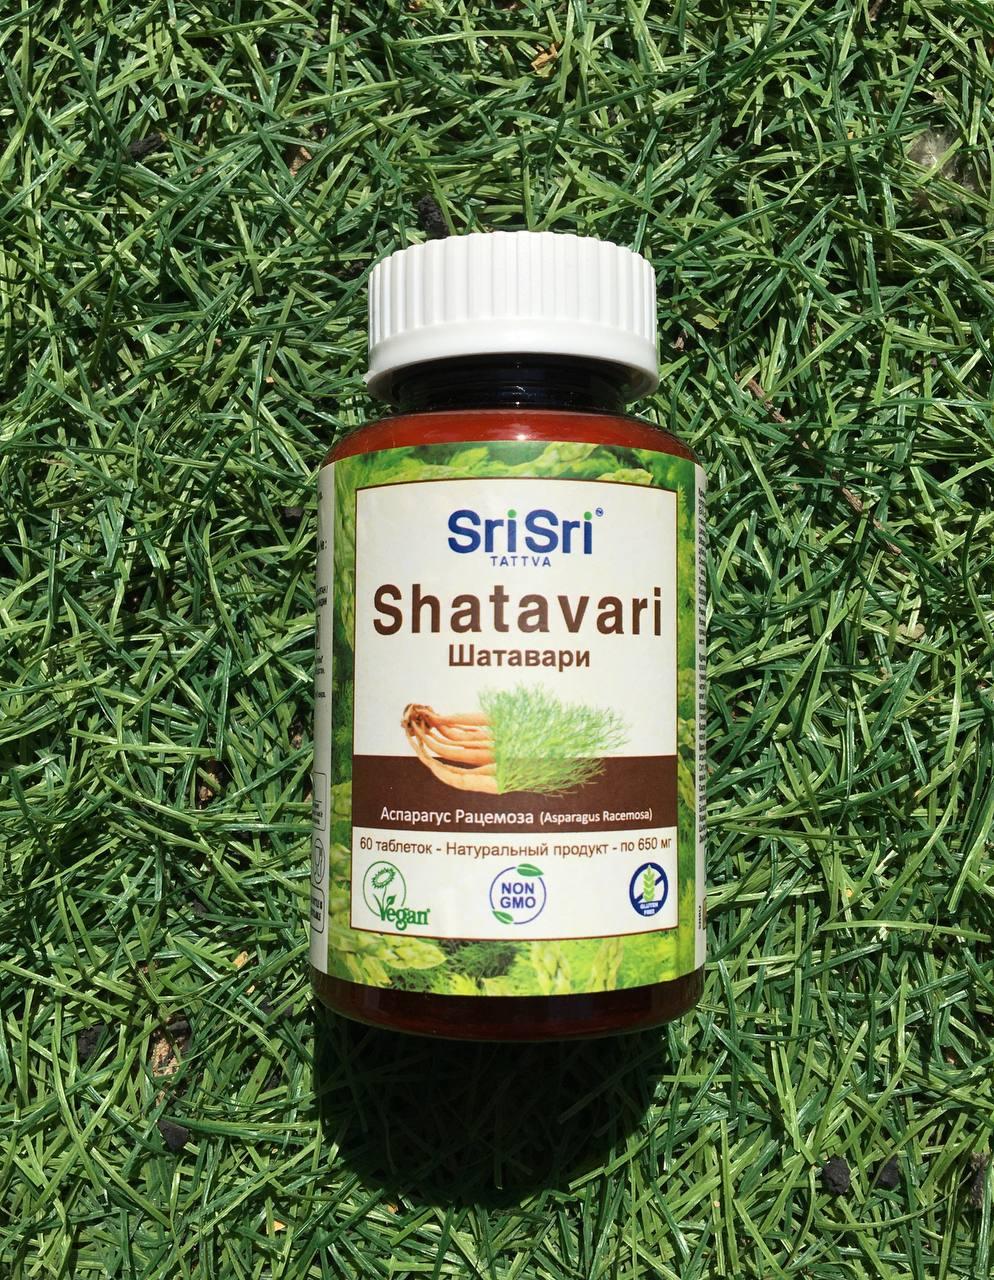 Биологически Активная Добавка “Шатавари - Шри Шри Таттва" (Shatavari Sri Sri Tattva)